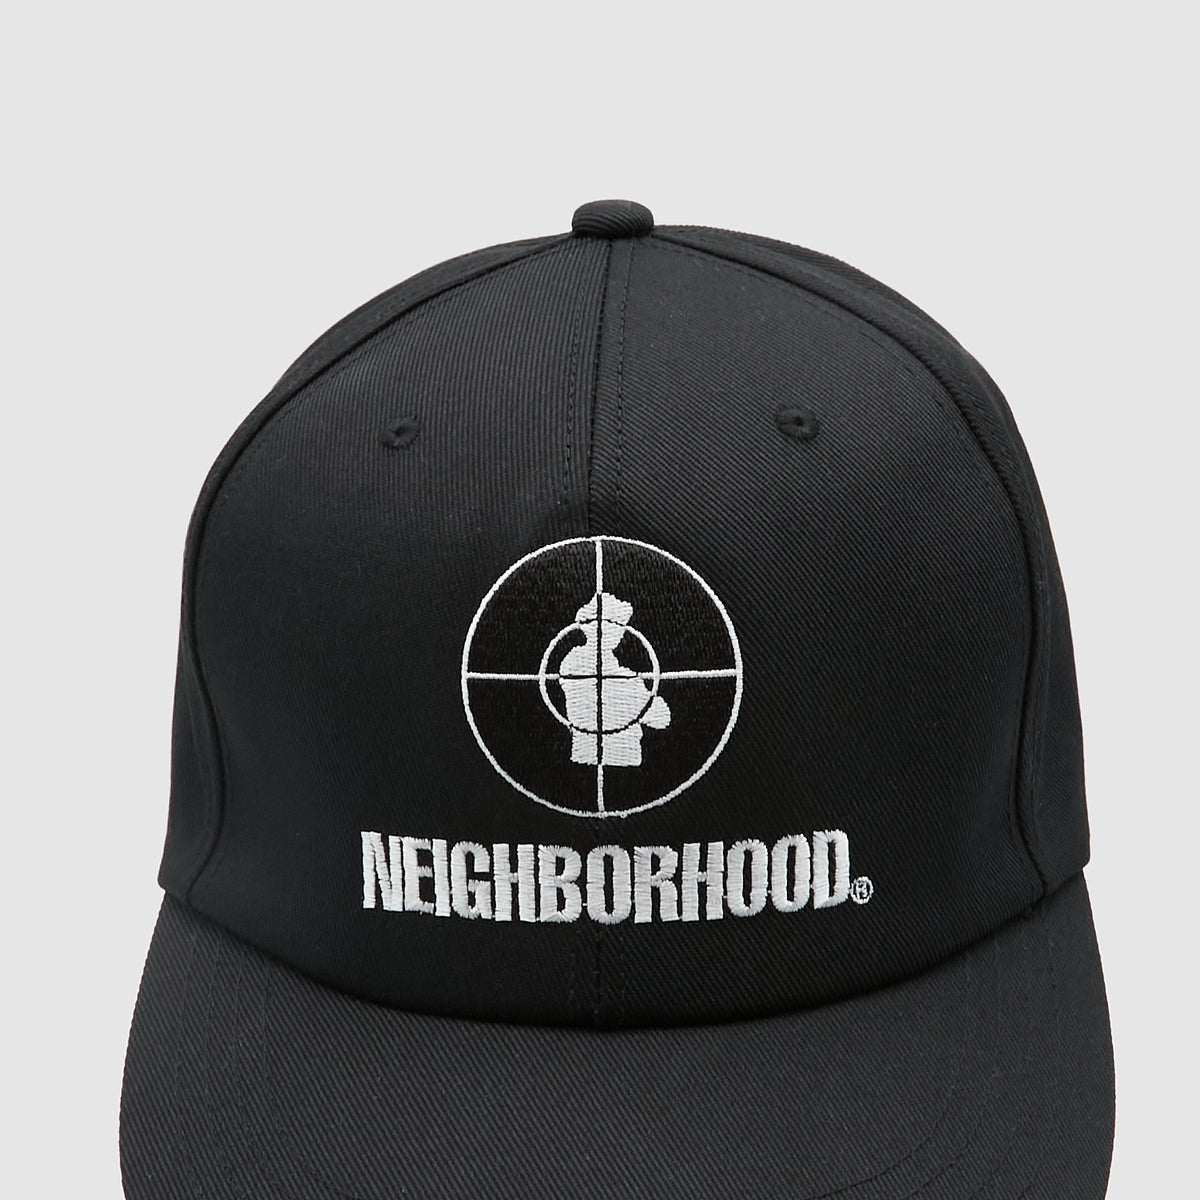 Neighborhood Public Enemy Baseball Cap - DeeCee style